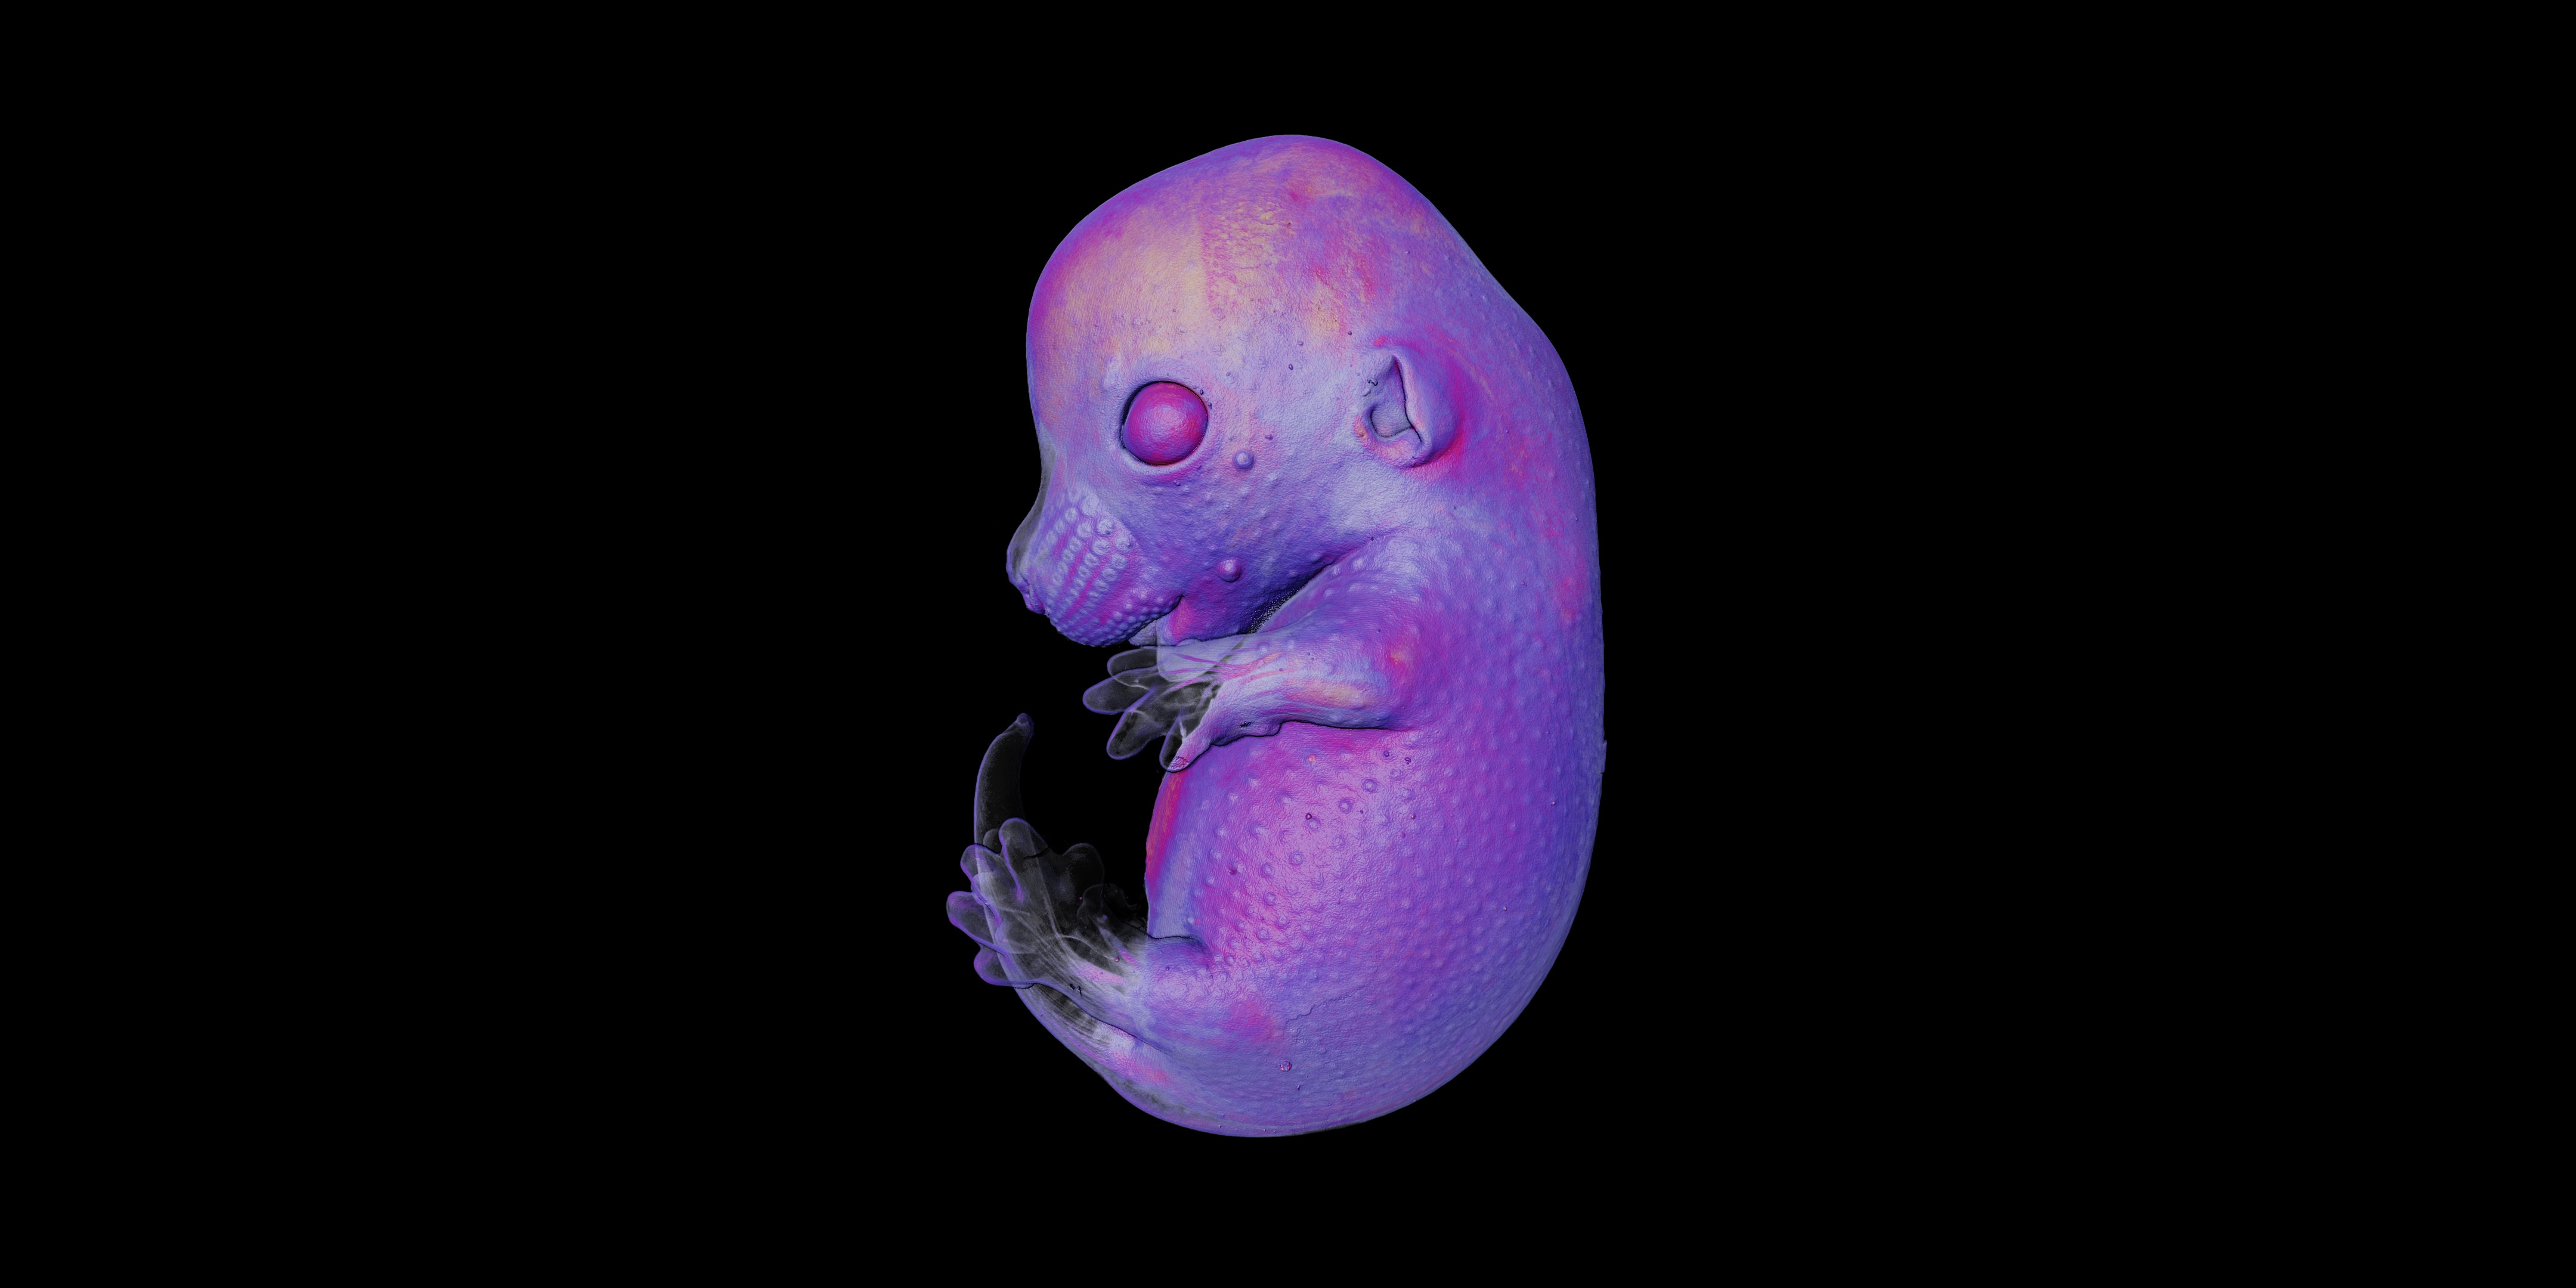 A purple image of a mouse embryo